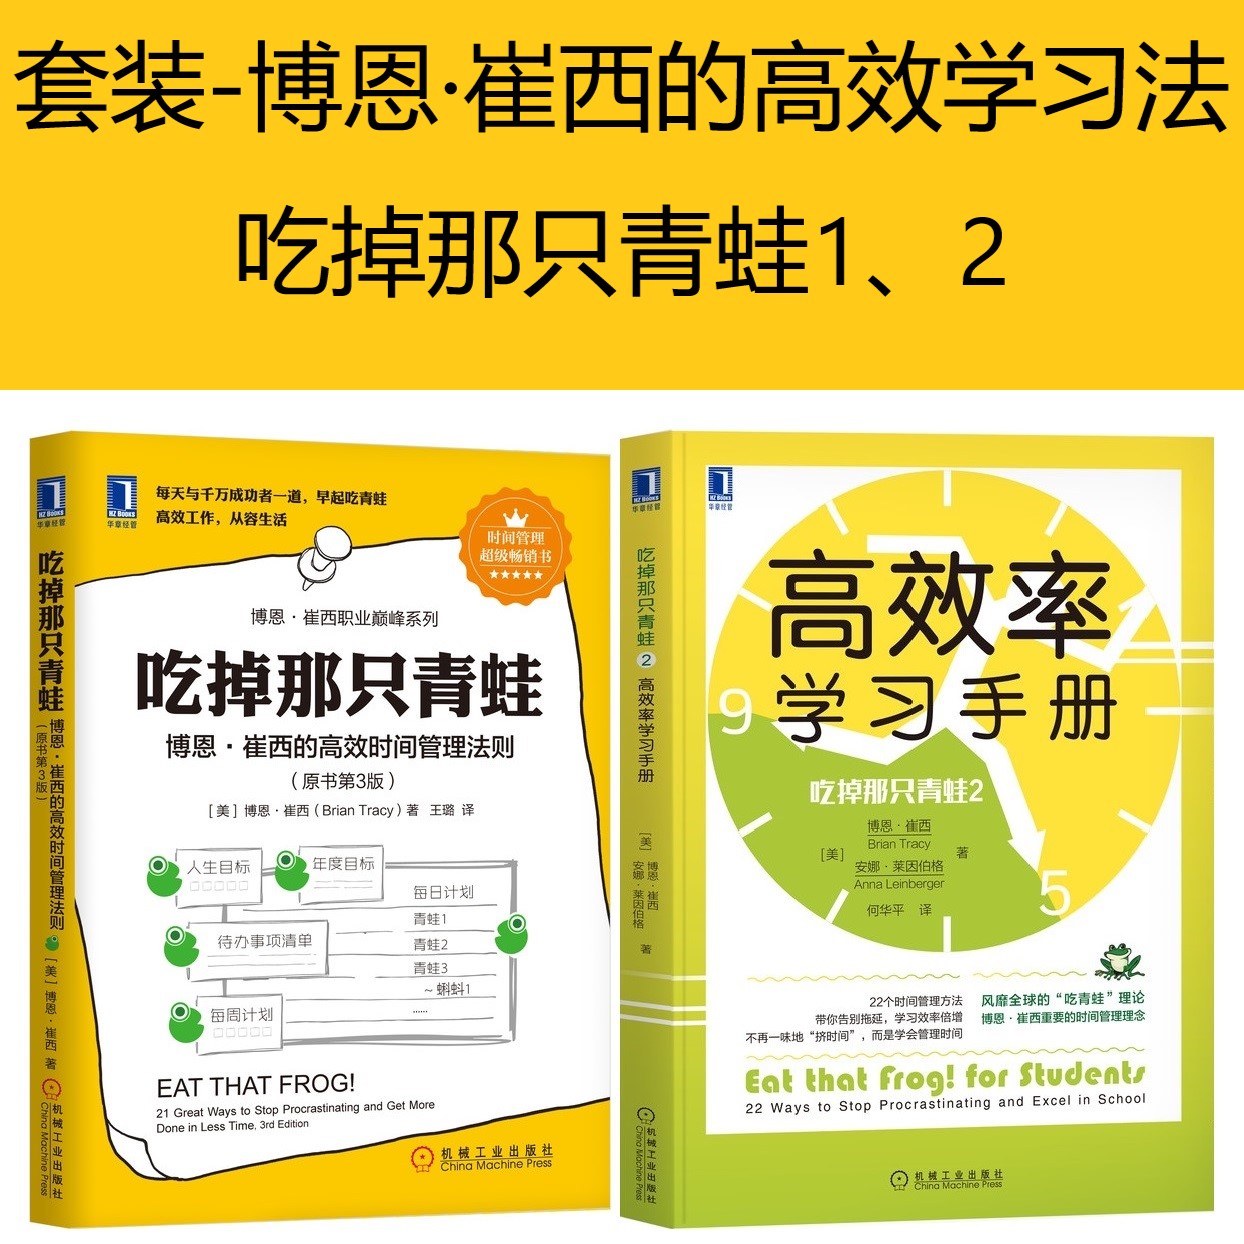 吃掉那只青蛙1+2高效率学习手册博恩崔西的高xiao时间管理法则自我管理励志成功书籍机械工业出版社